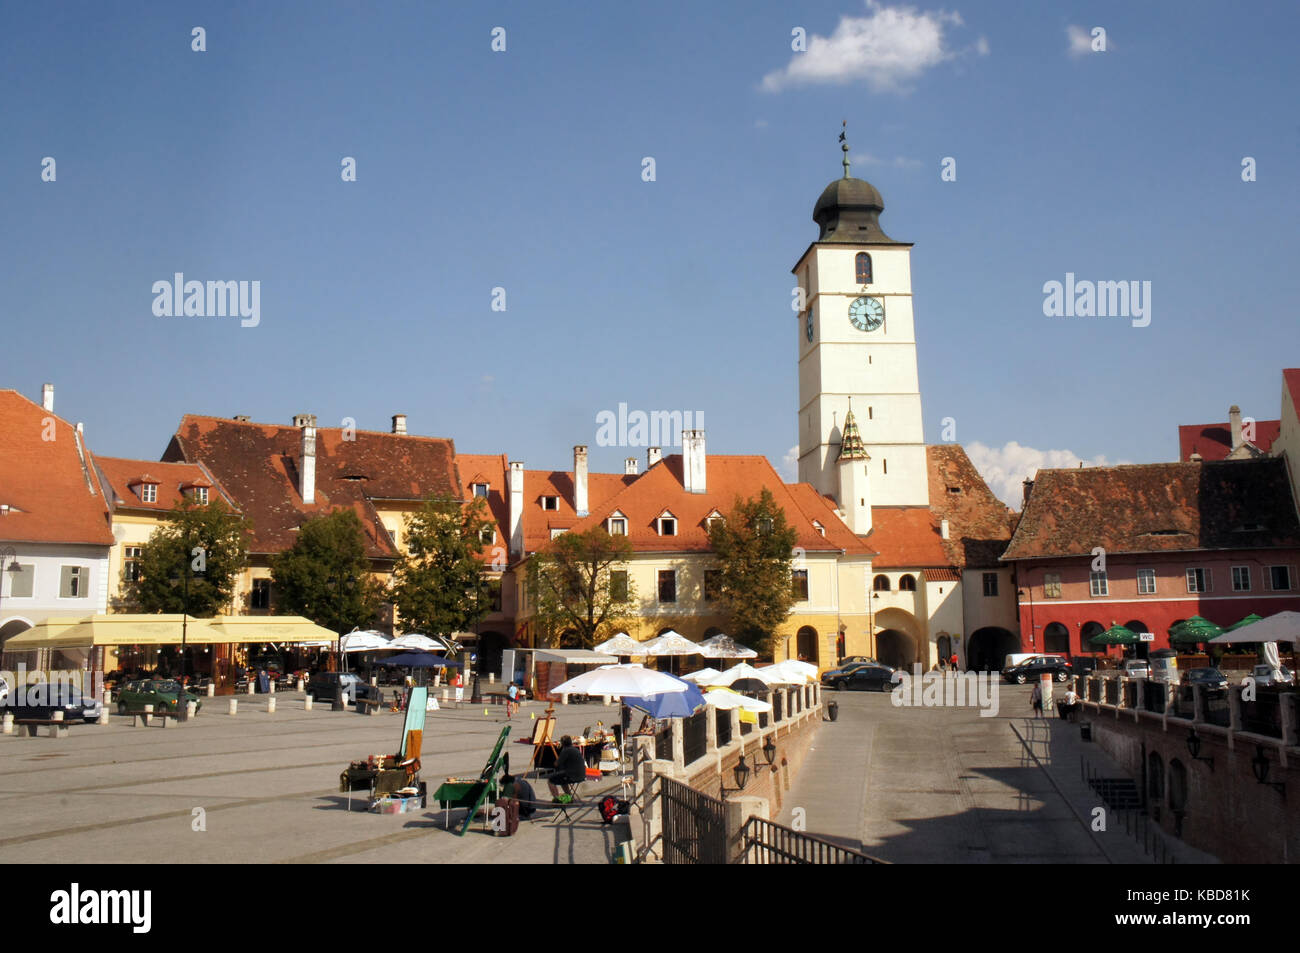 Place principale de la ville dans la ville médiévale de Sibiu, Transylvanie Roumanie Banque D'Images